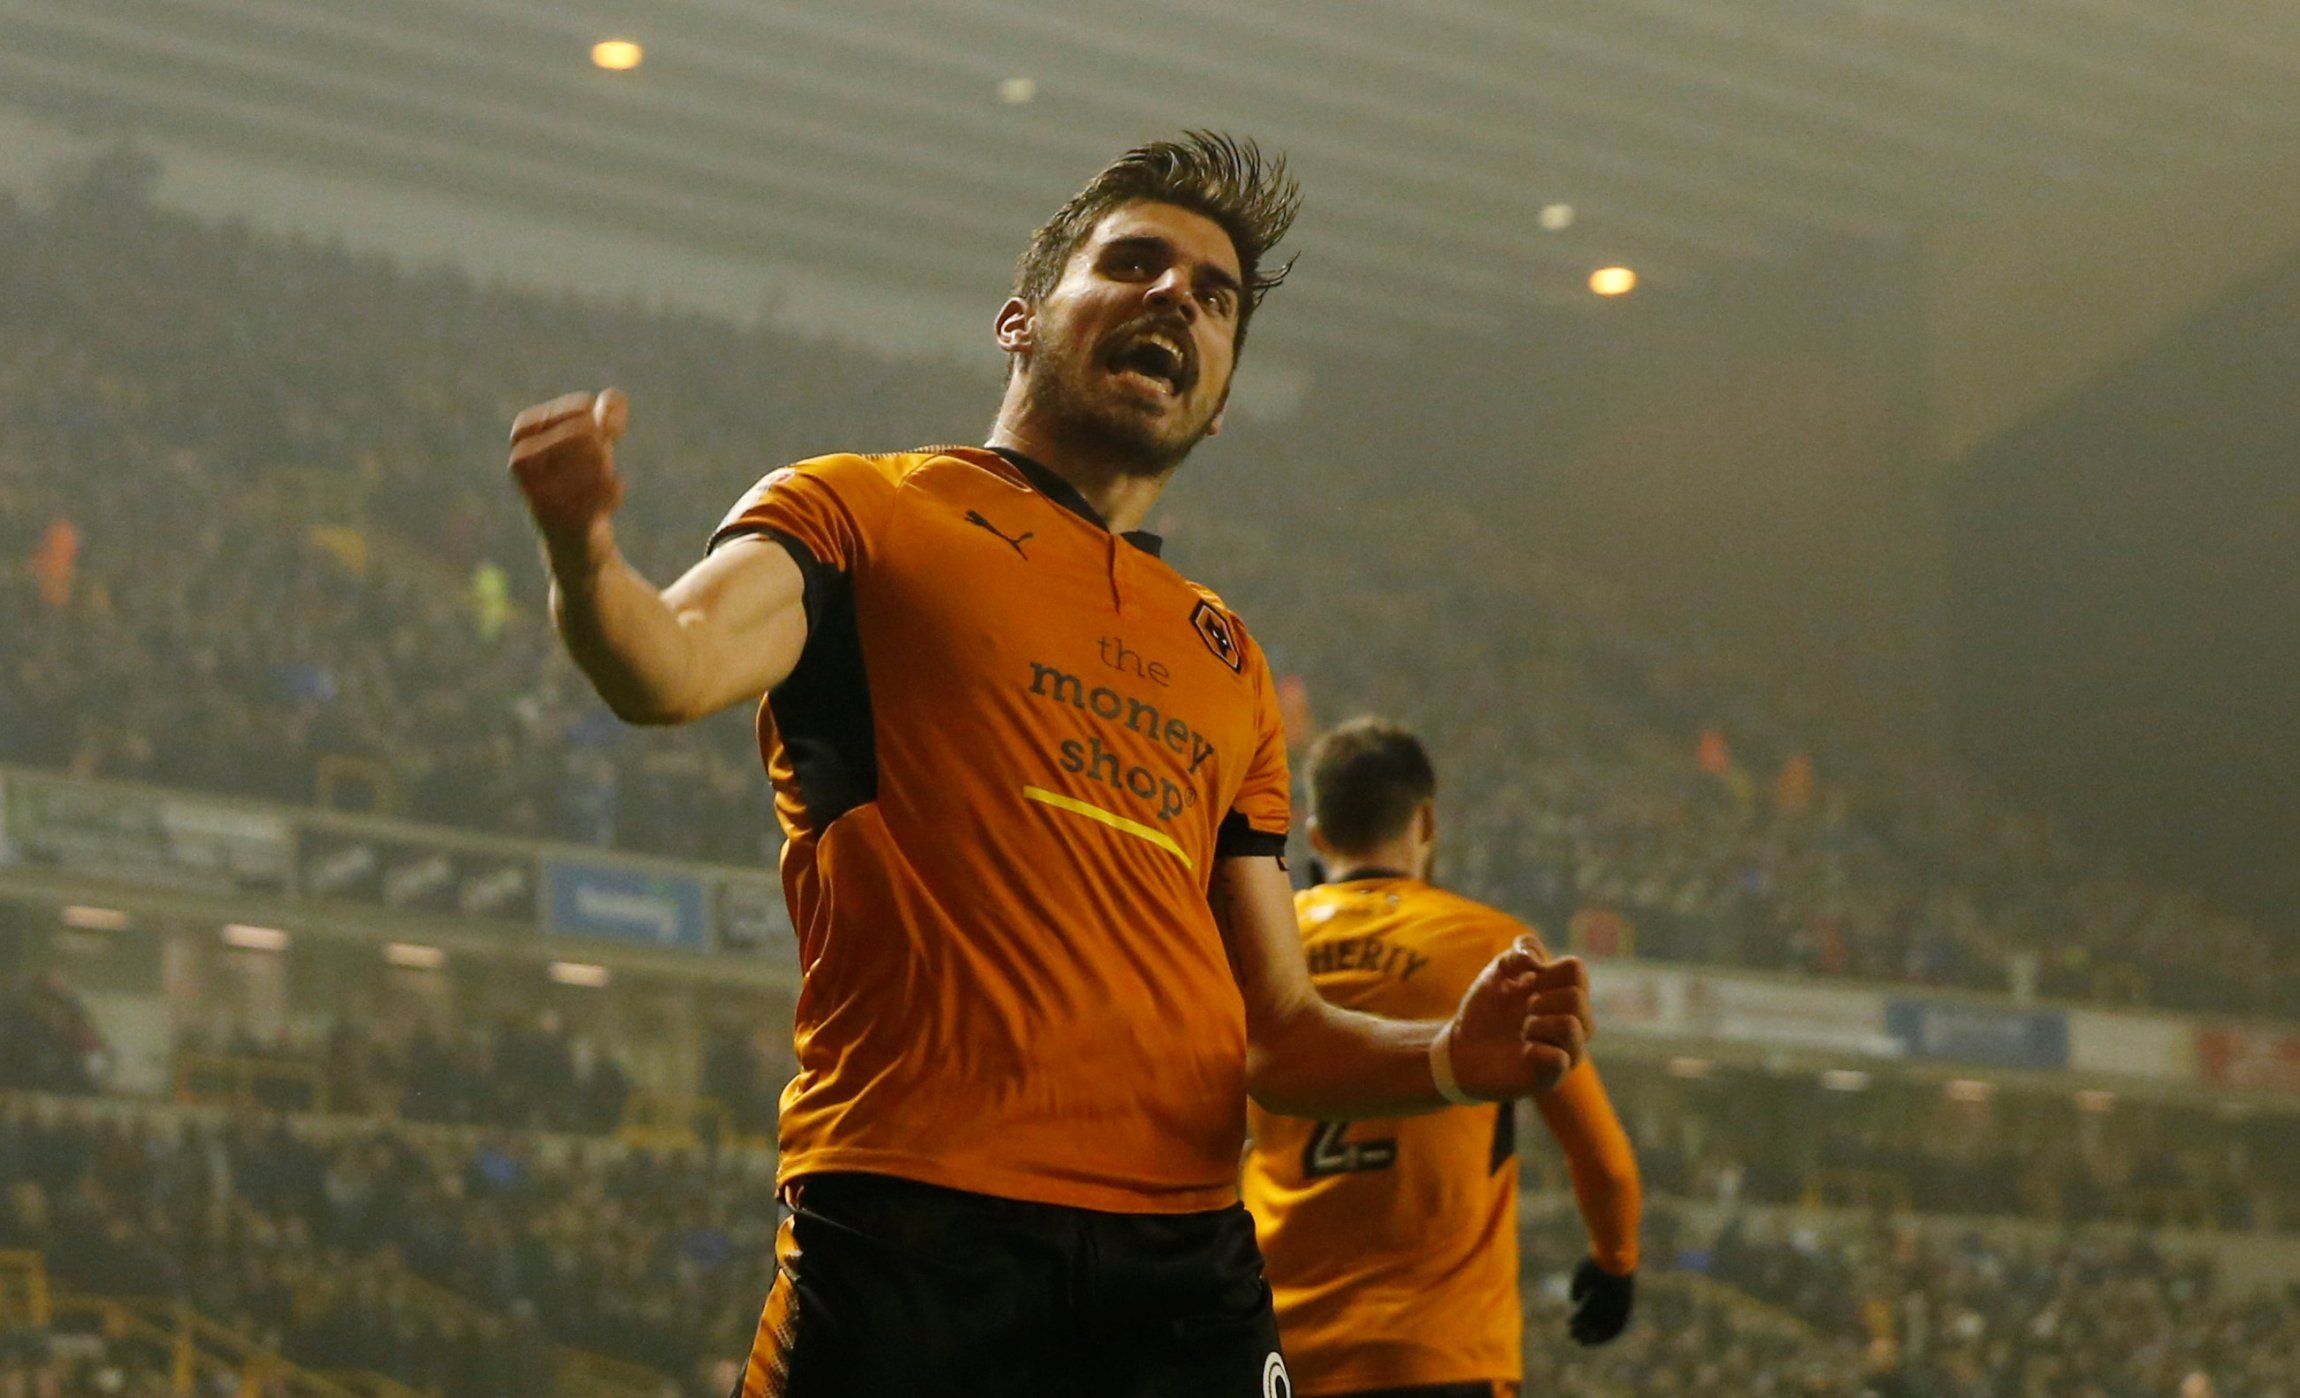 Ruben Neves celebrates scoring for Wolverhampton Wanderers